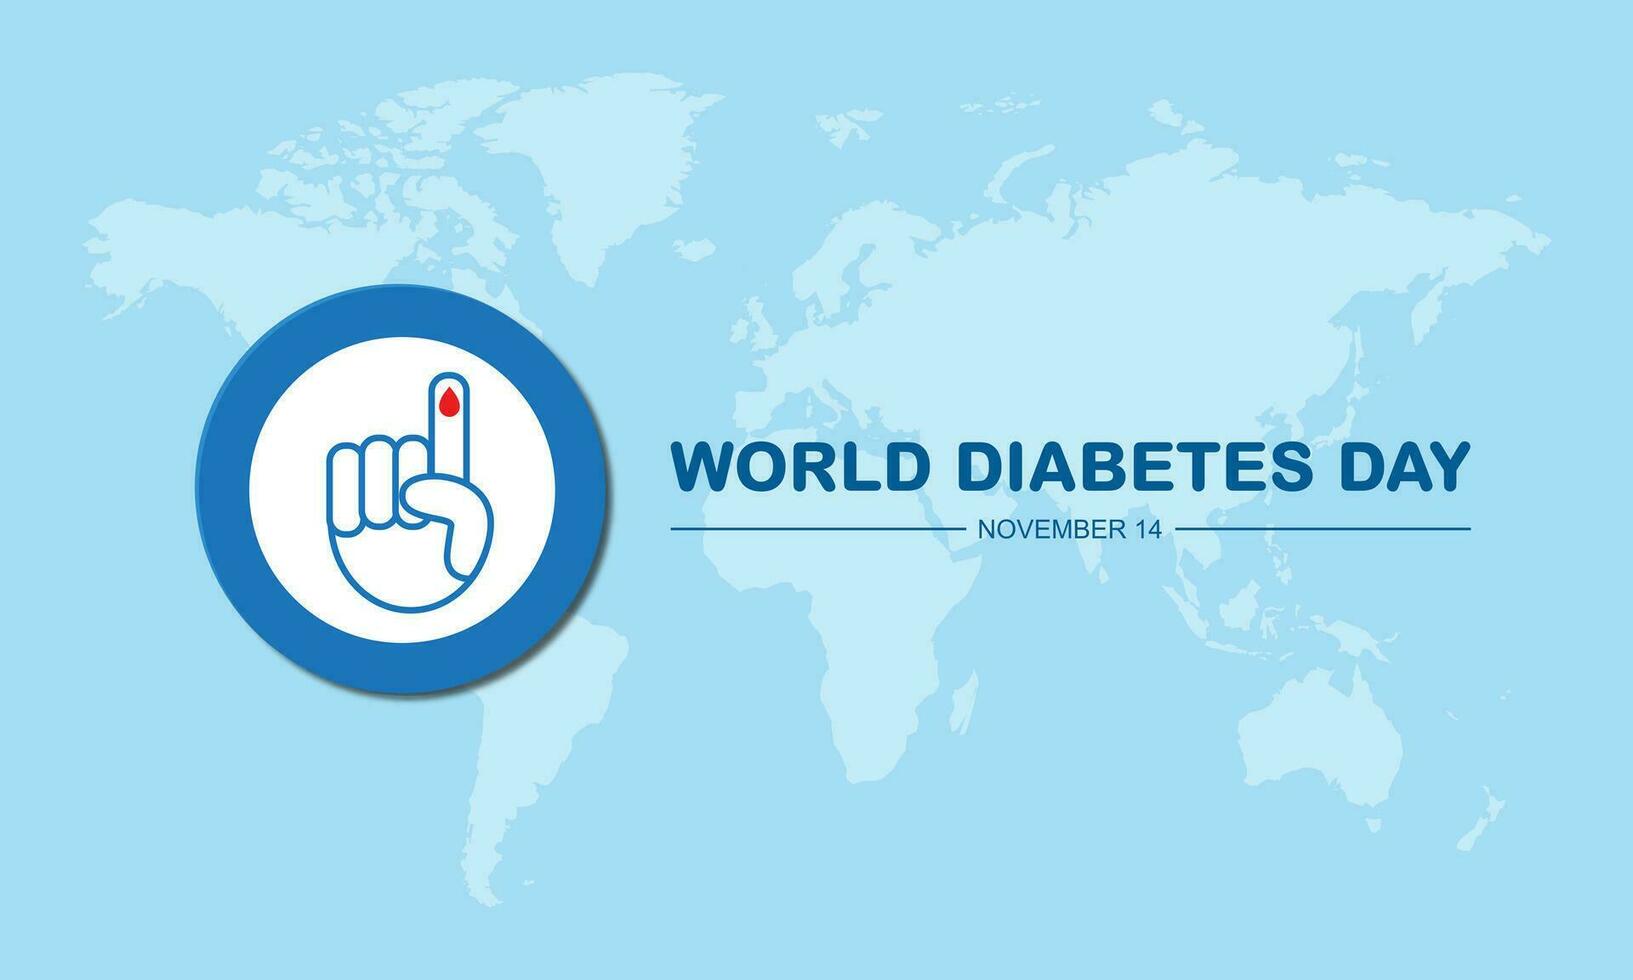 värld diabetes dag november 14 bakgrund vektor illustration